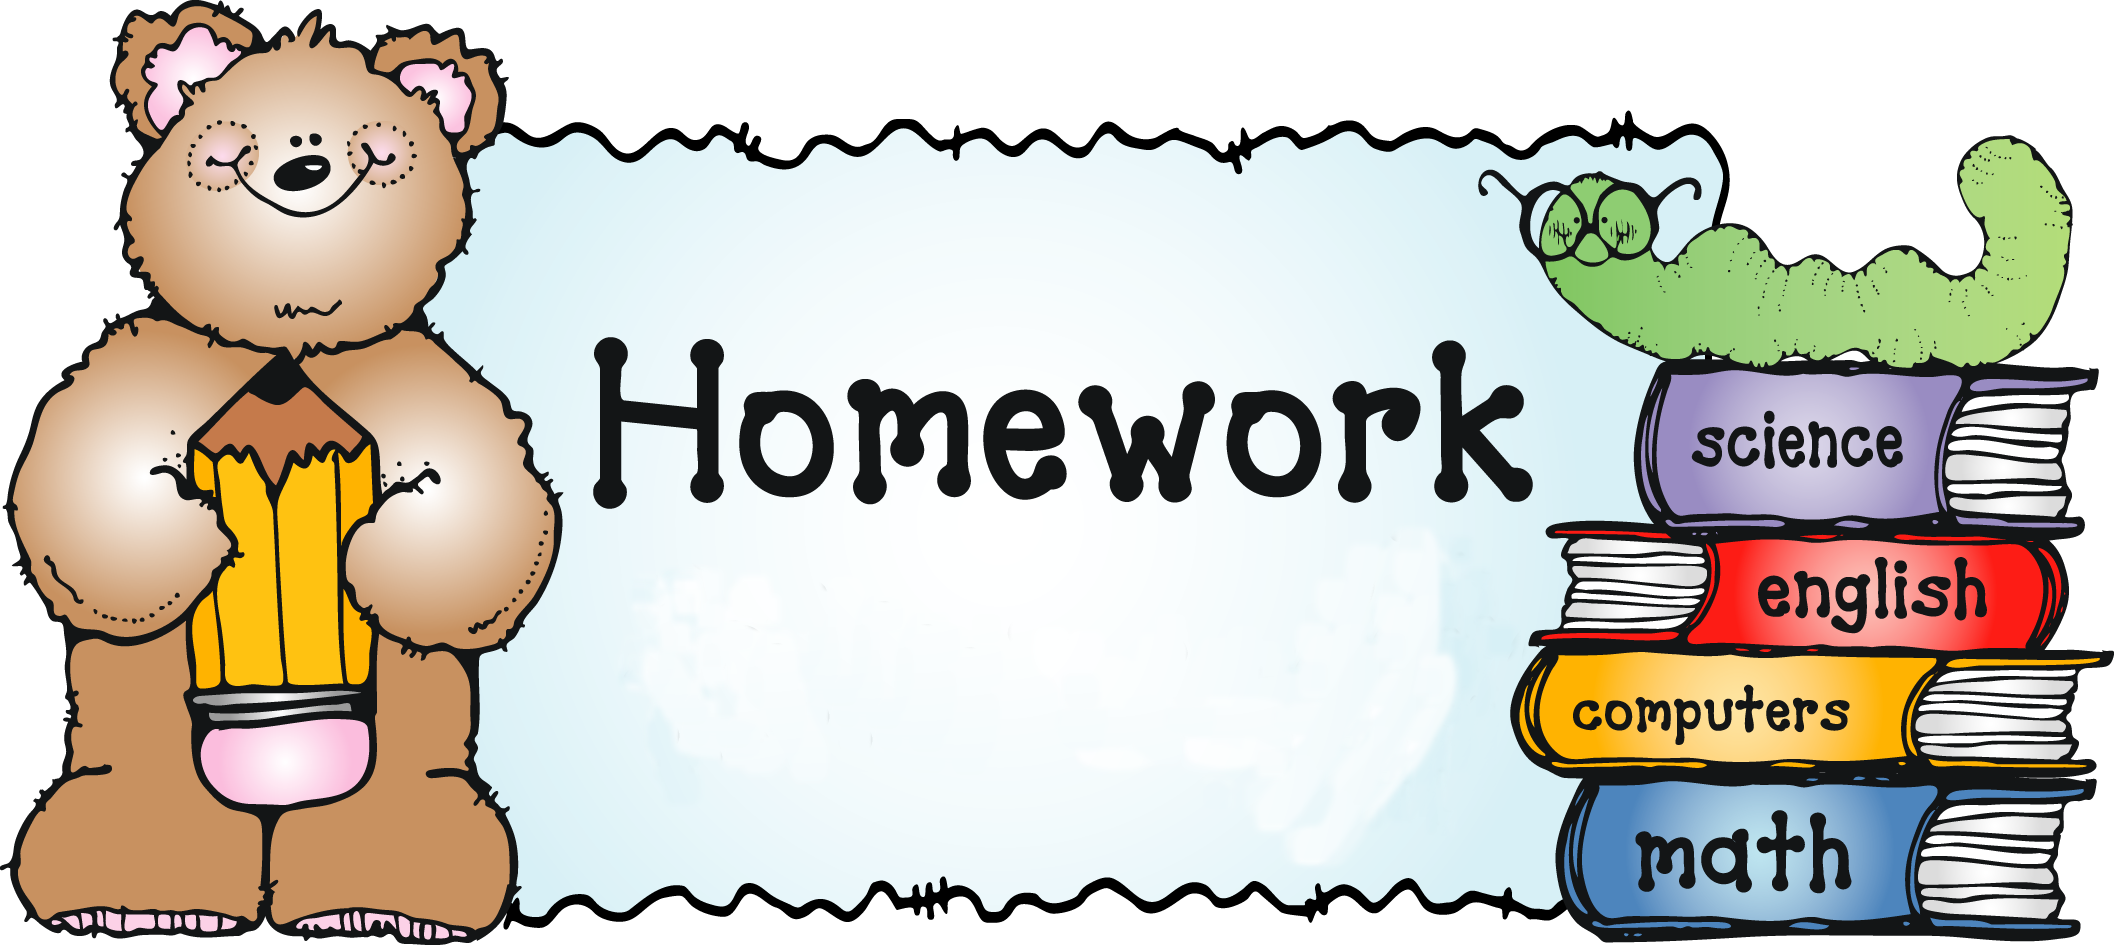 Стань сильнее на английском. Homework. Домашнее задание на английском. Homework картинка. Рисунки для презентации по английскому языку.